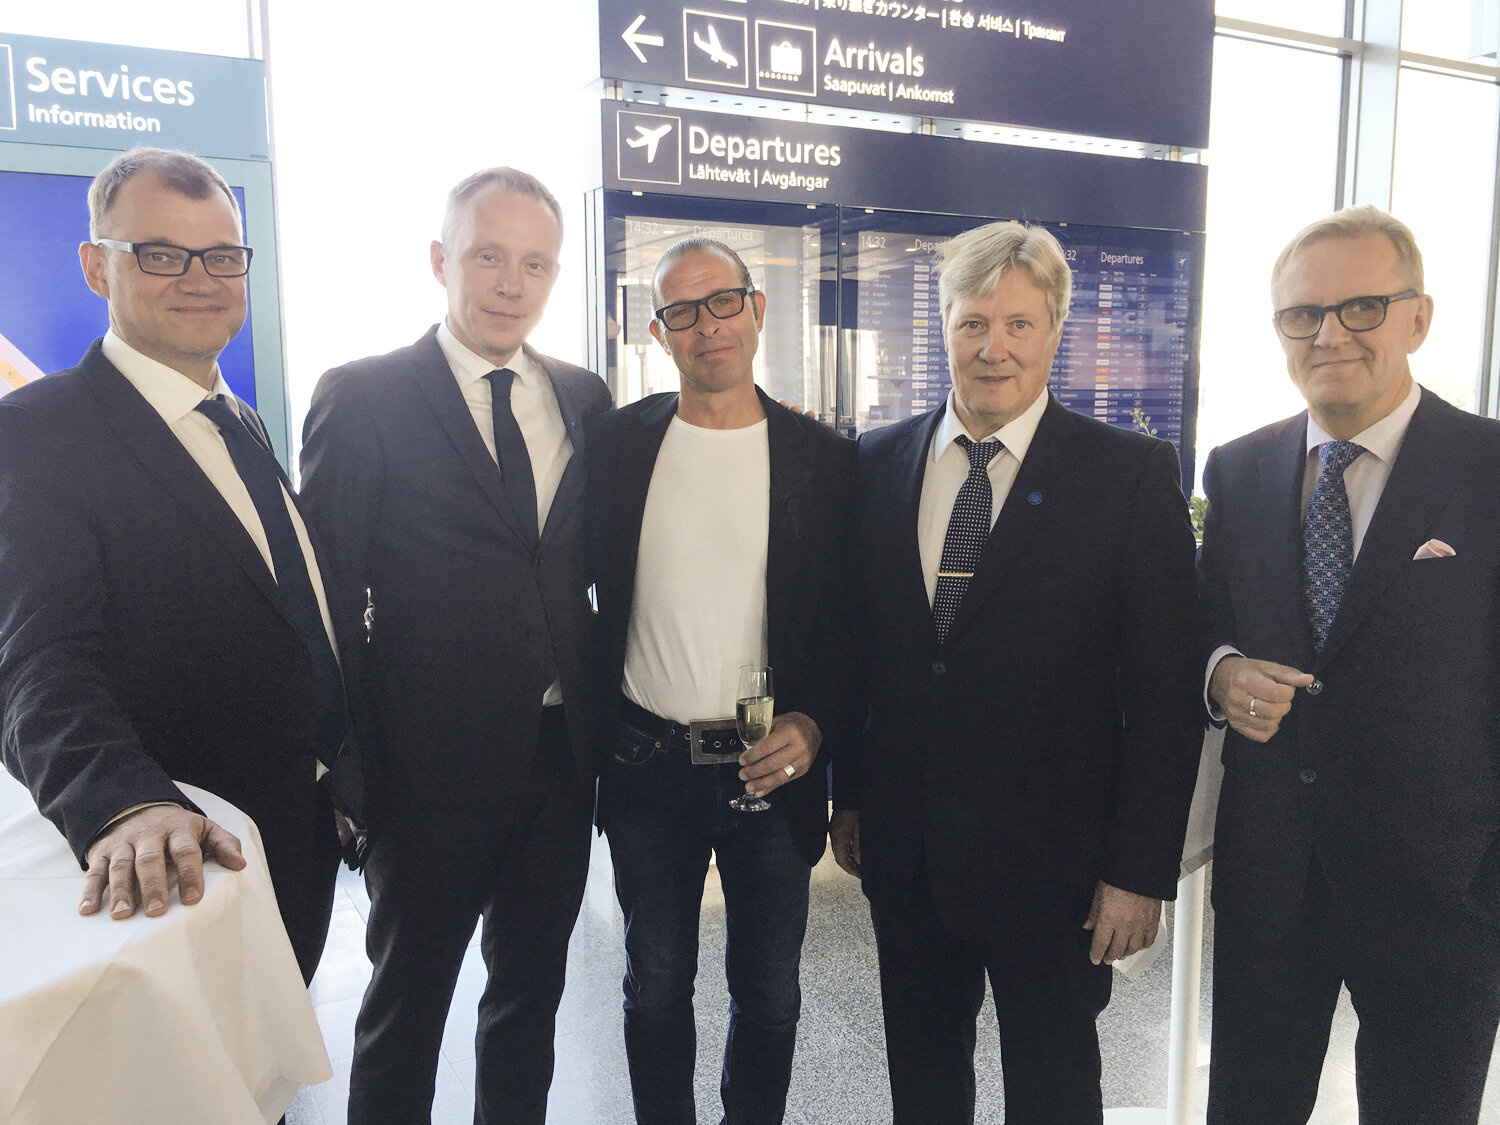 Prime Minister Juha Sipilä (Finland), Ville Haapasaari (MD/Helsinki Intl. Airport), Stefan Lindfors, Kari Savolainen (CEO/FINAVIA), and Harri Sailas (Chairman/FINAVIA &amp; Solidium). 2017